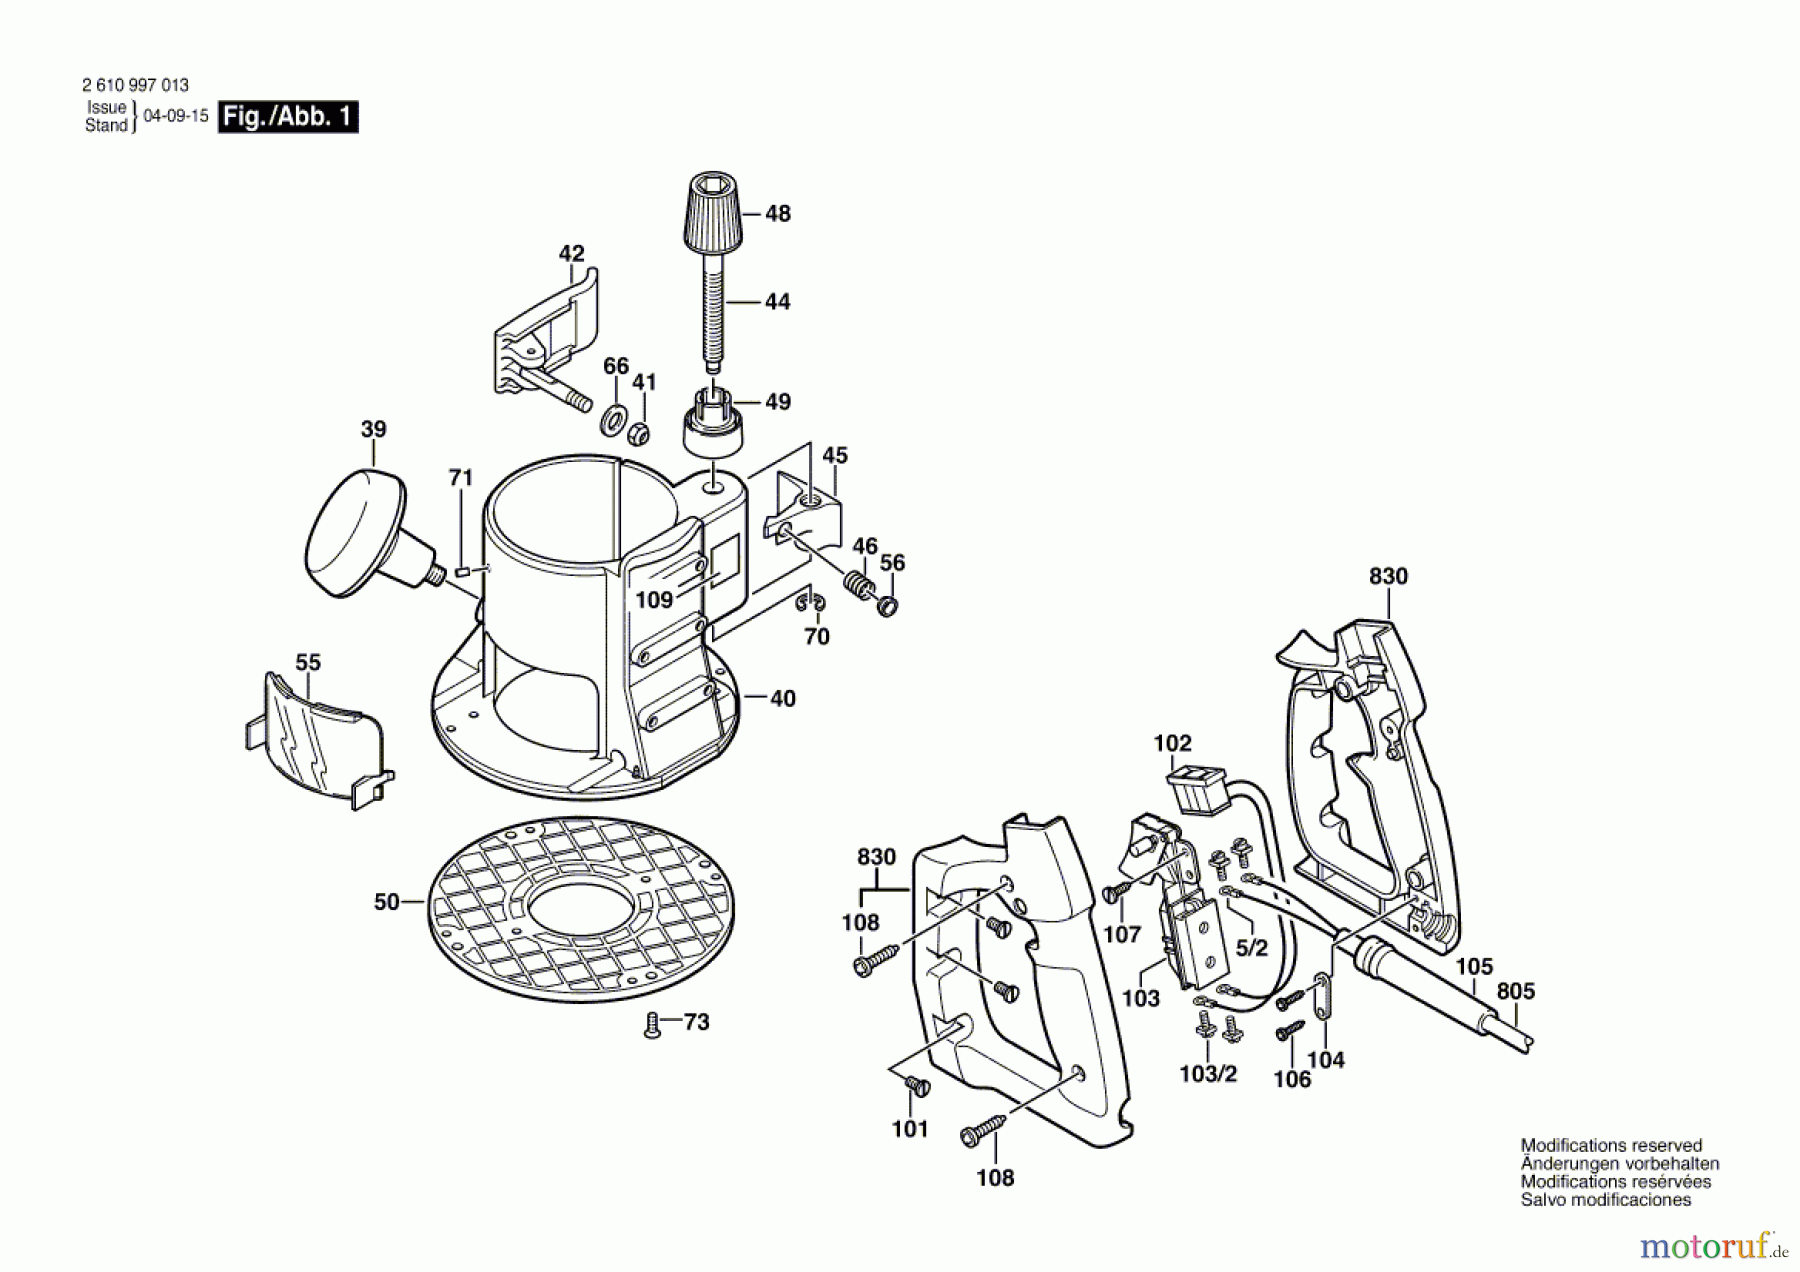  Bosch Werkzeug Basiseinheit RA 1162 Seite 1